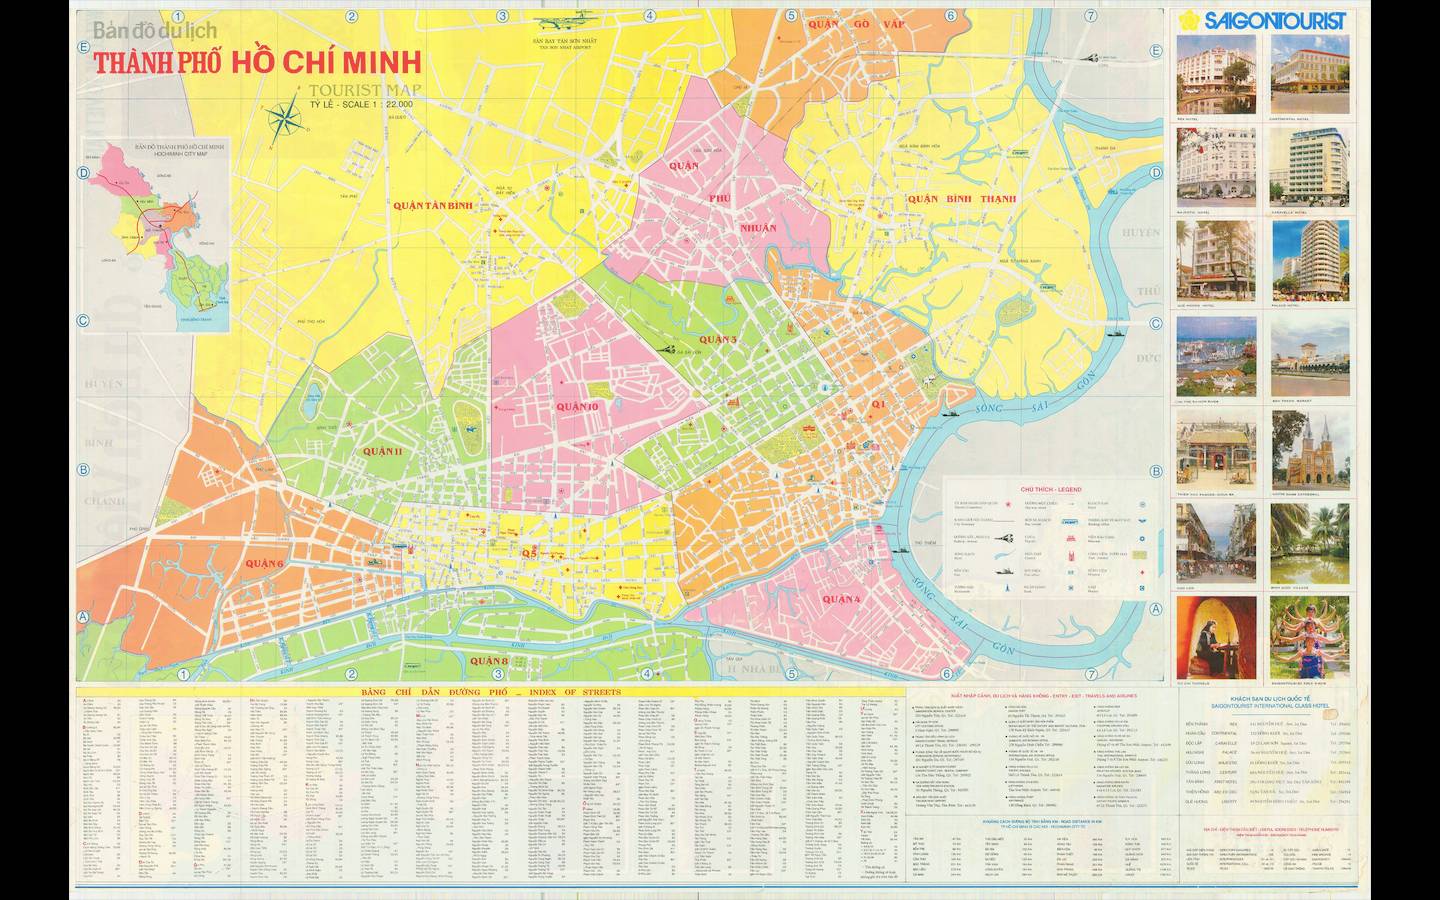 Với bản đồ TP HCM Khổ Lớn năm 2024, các thông tin về địa điểm và giao thông sẽ được cập nhật liên tục, giúp cho bạn dễ dàng di chuyển trong thành phố đông đúc này. Hãy khám phá và tìm hiểu thành phố mà mình yêu thích nhất!